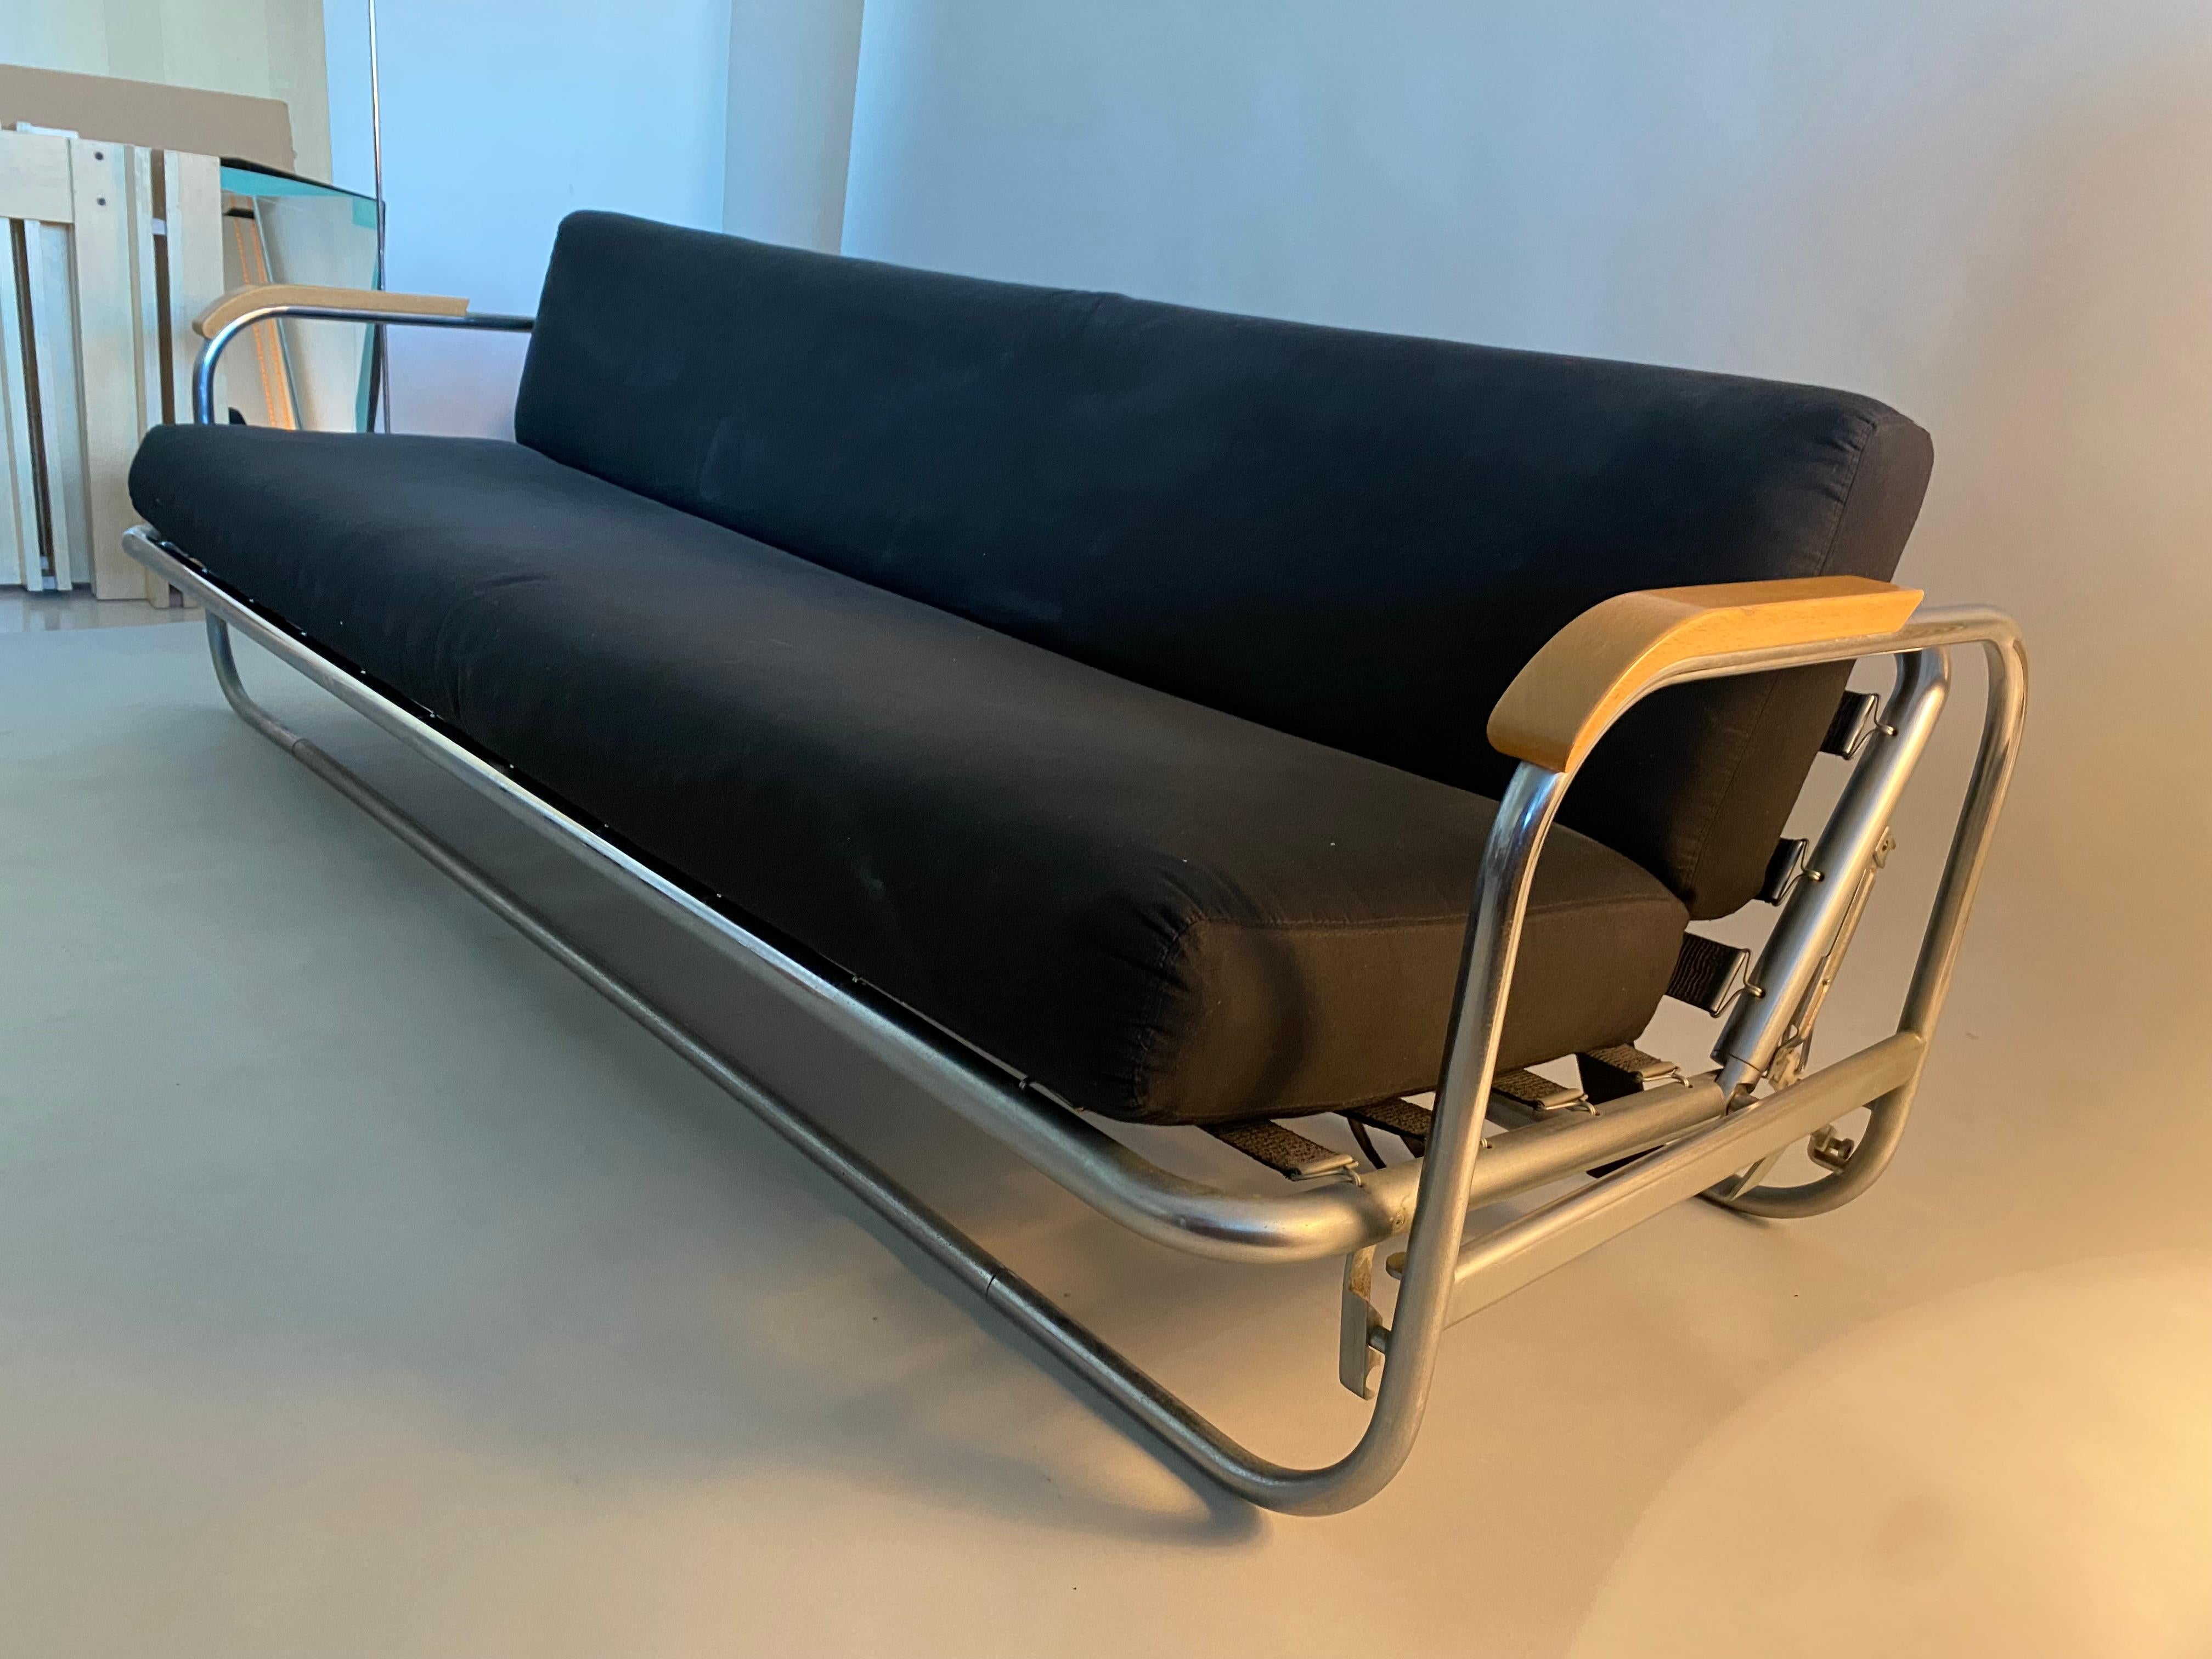 Lit de jour Alvar Aalto avec siège et dossier réglables jusqu'à l'obtention d'un lit simple. Il est fabriqué en acier tubulaire chromé et les accoudoirs sont en bois.
Ce canapé date des années 1970.

 